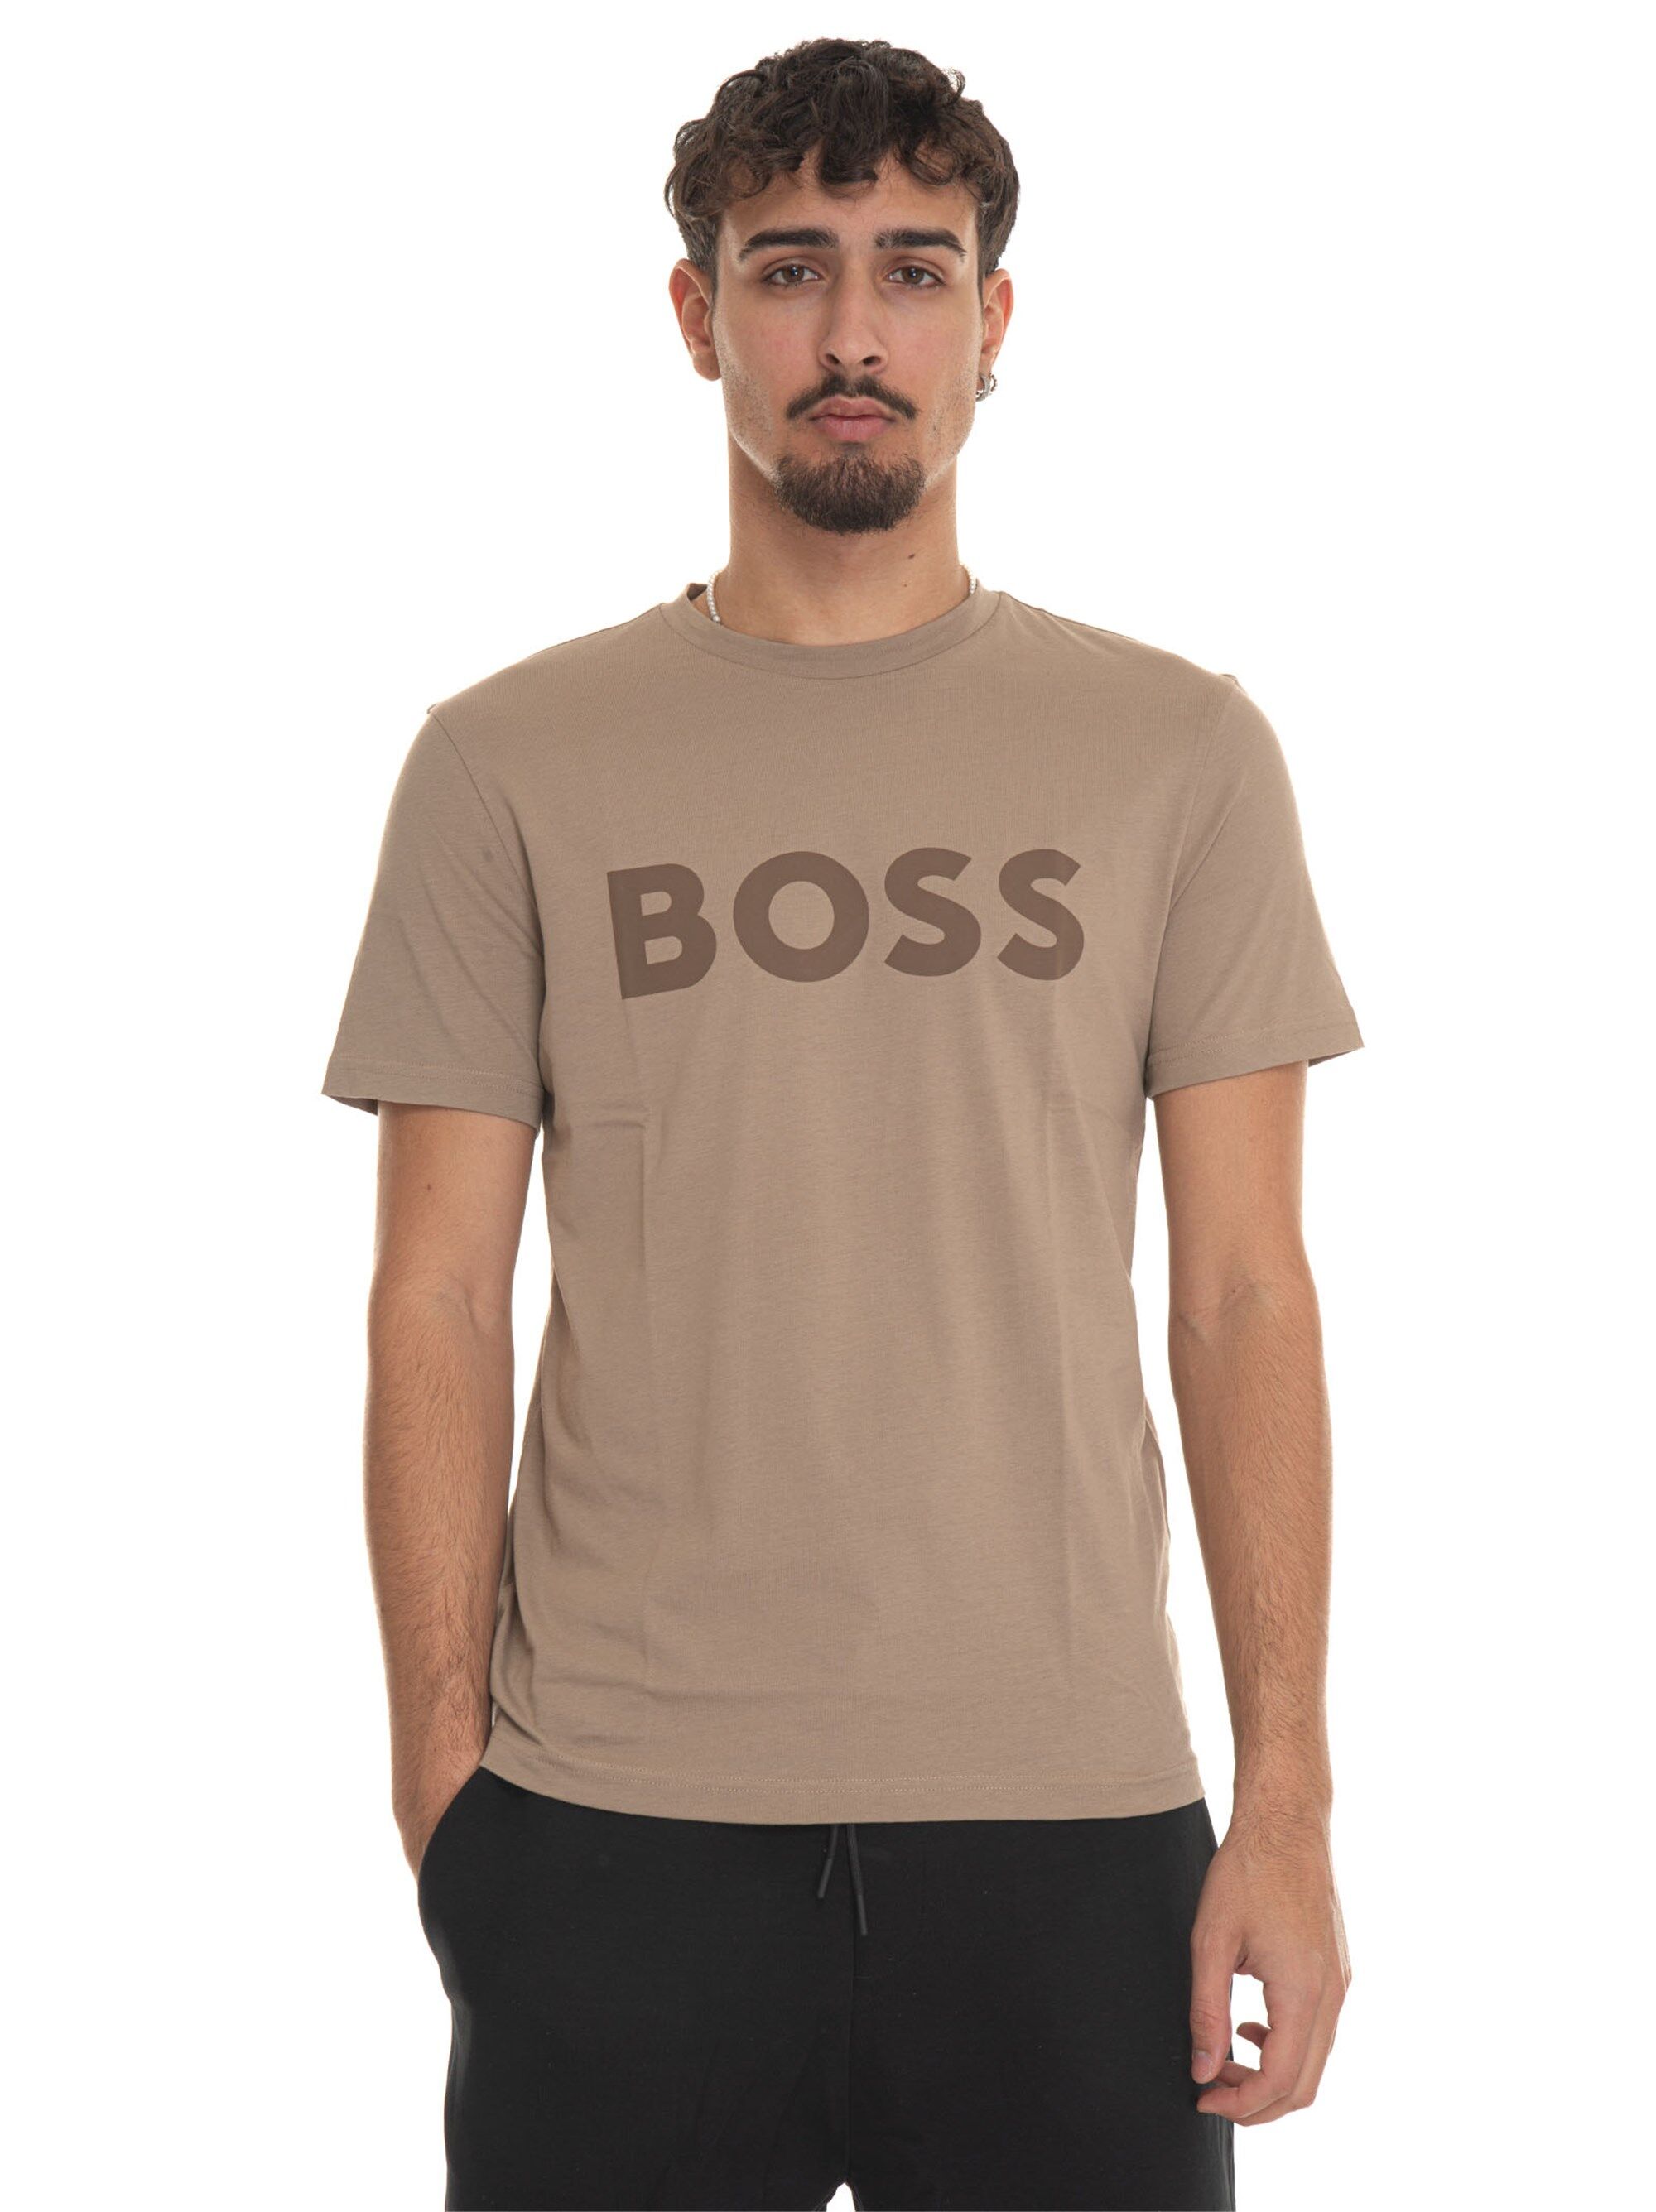 Boss T-shirt girocollo Beige Uomo M